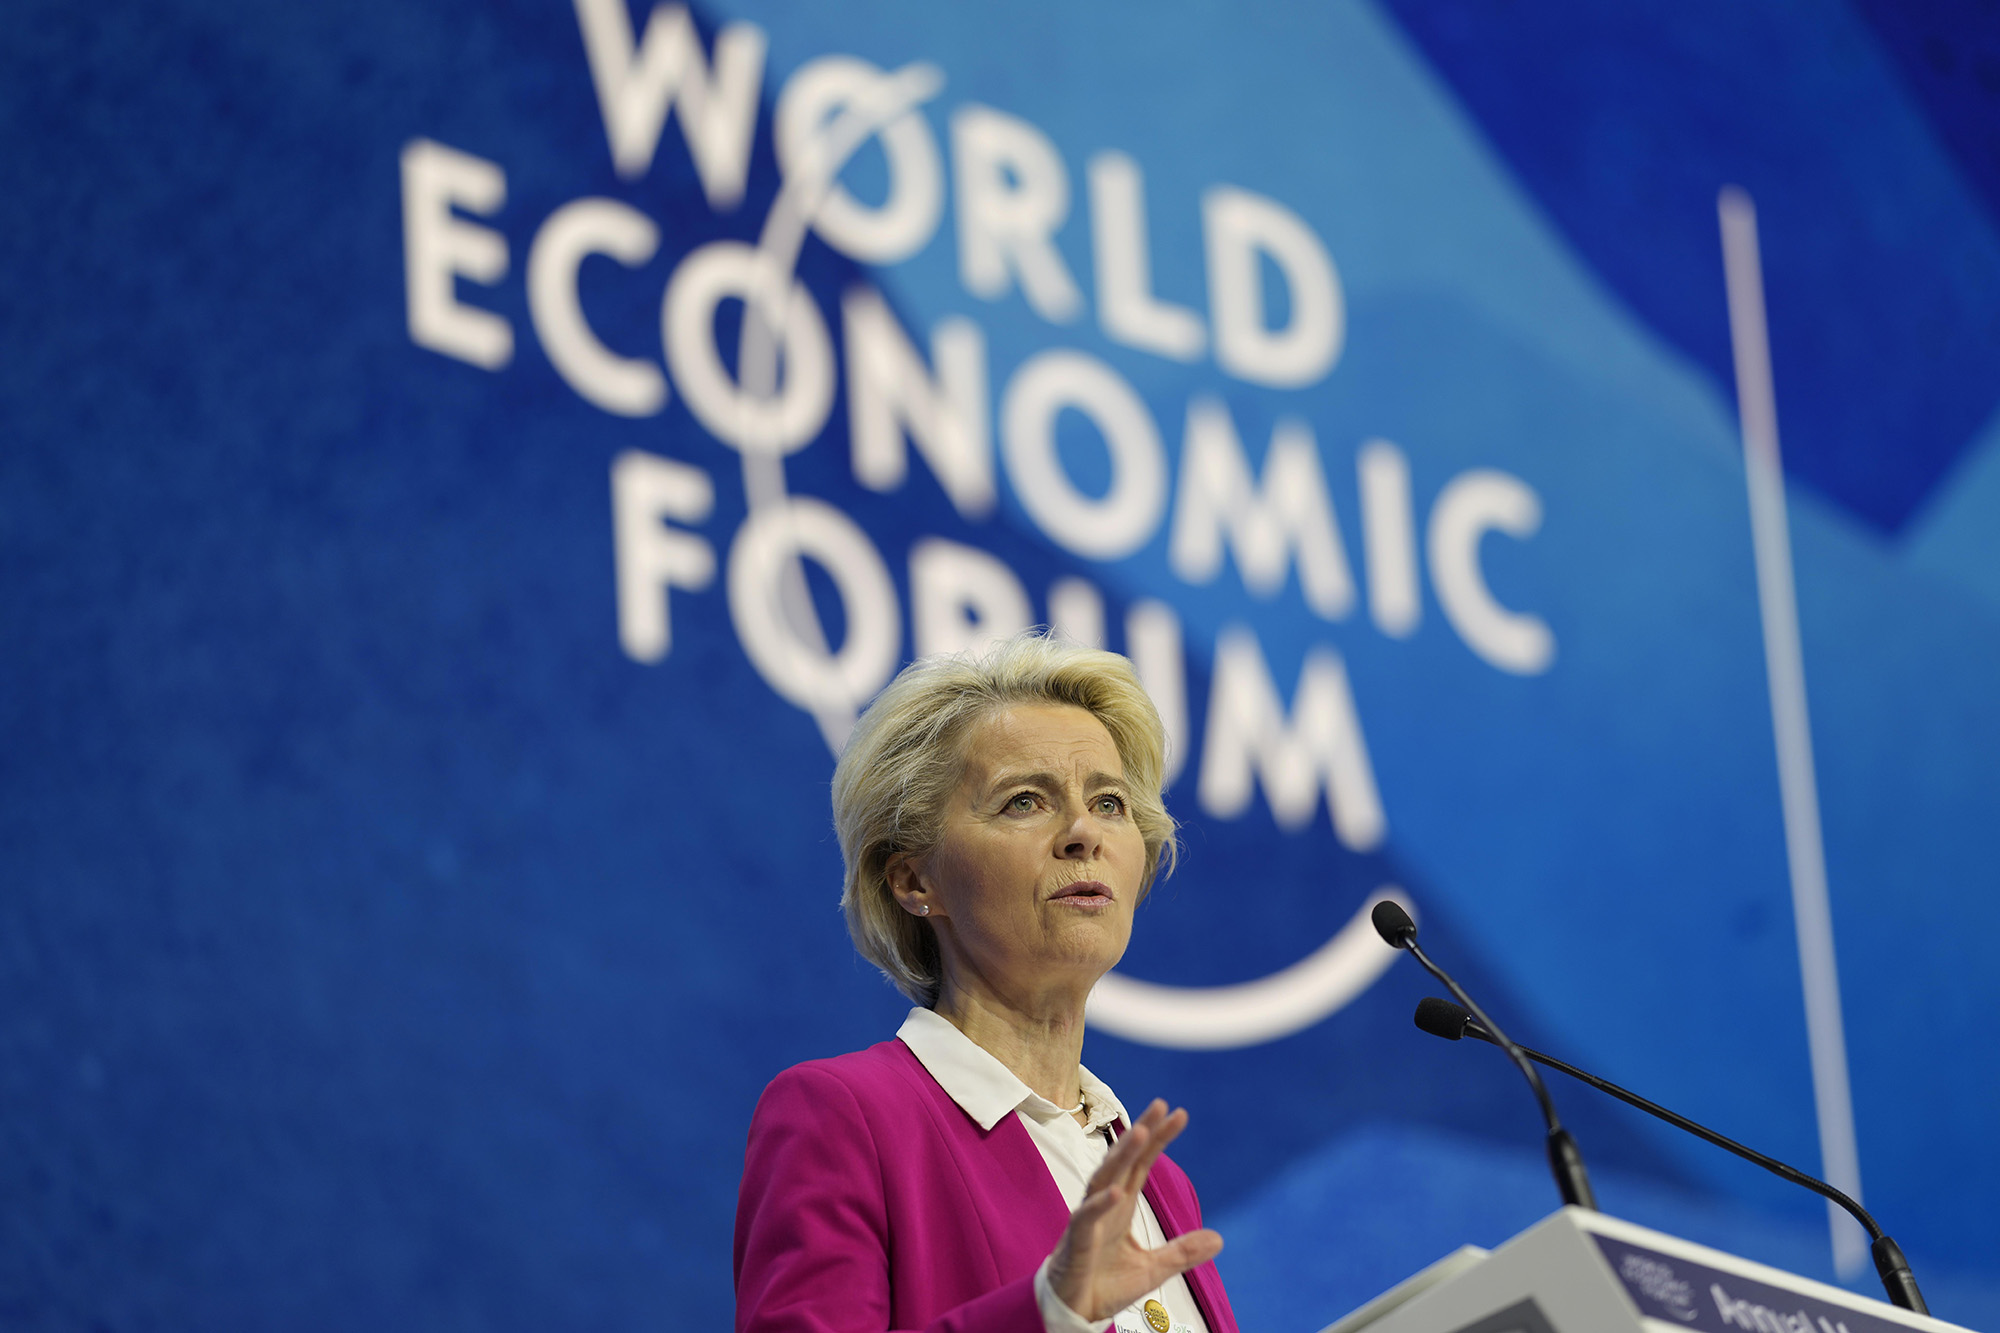 Ursula von der Leyen, President of the European Commission speaks at the World Economic Forum in Davos, Switzerland, on May 24.